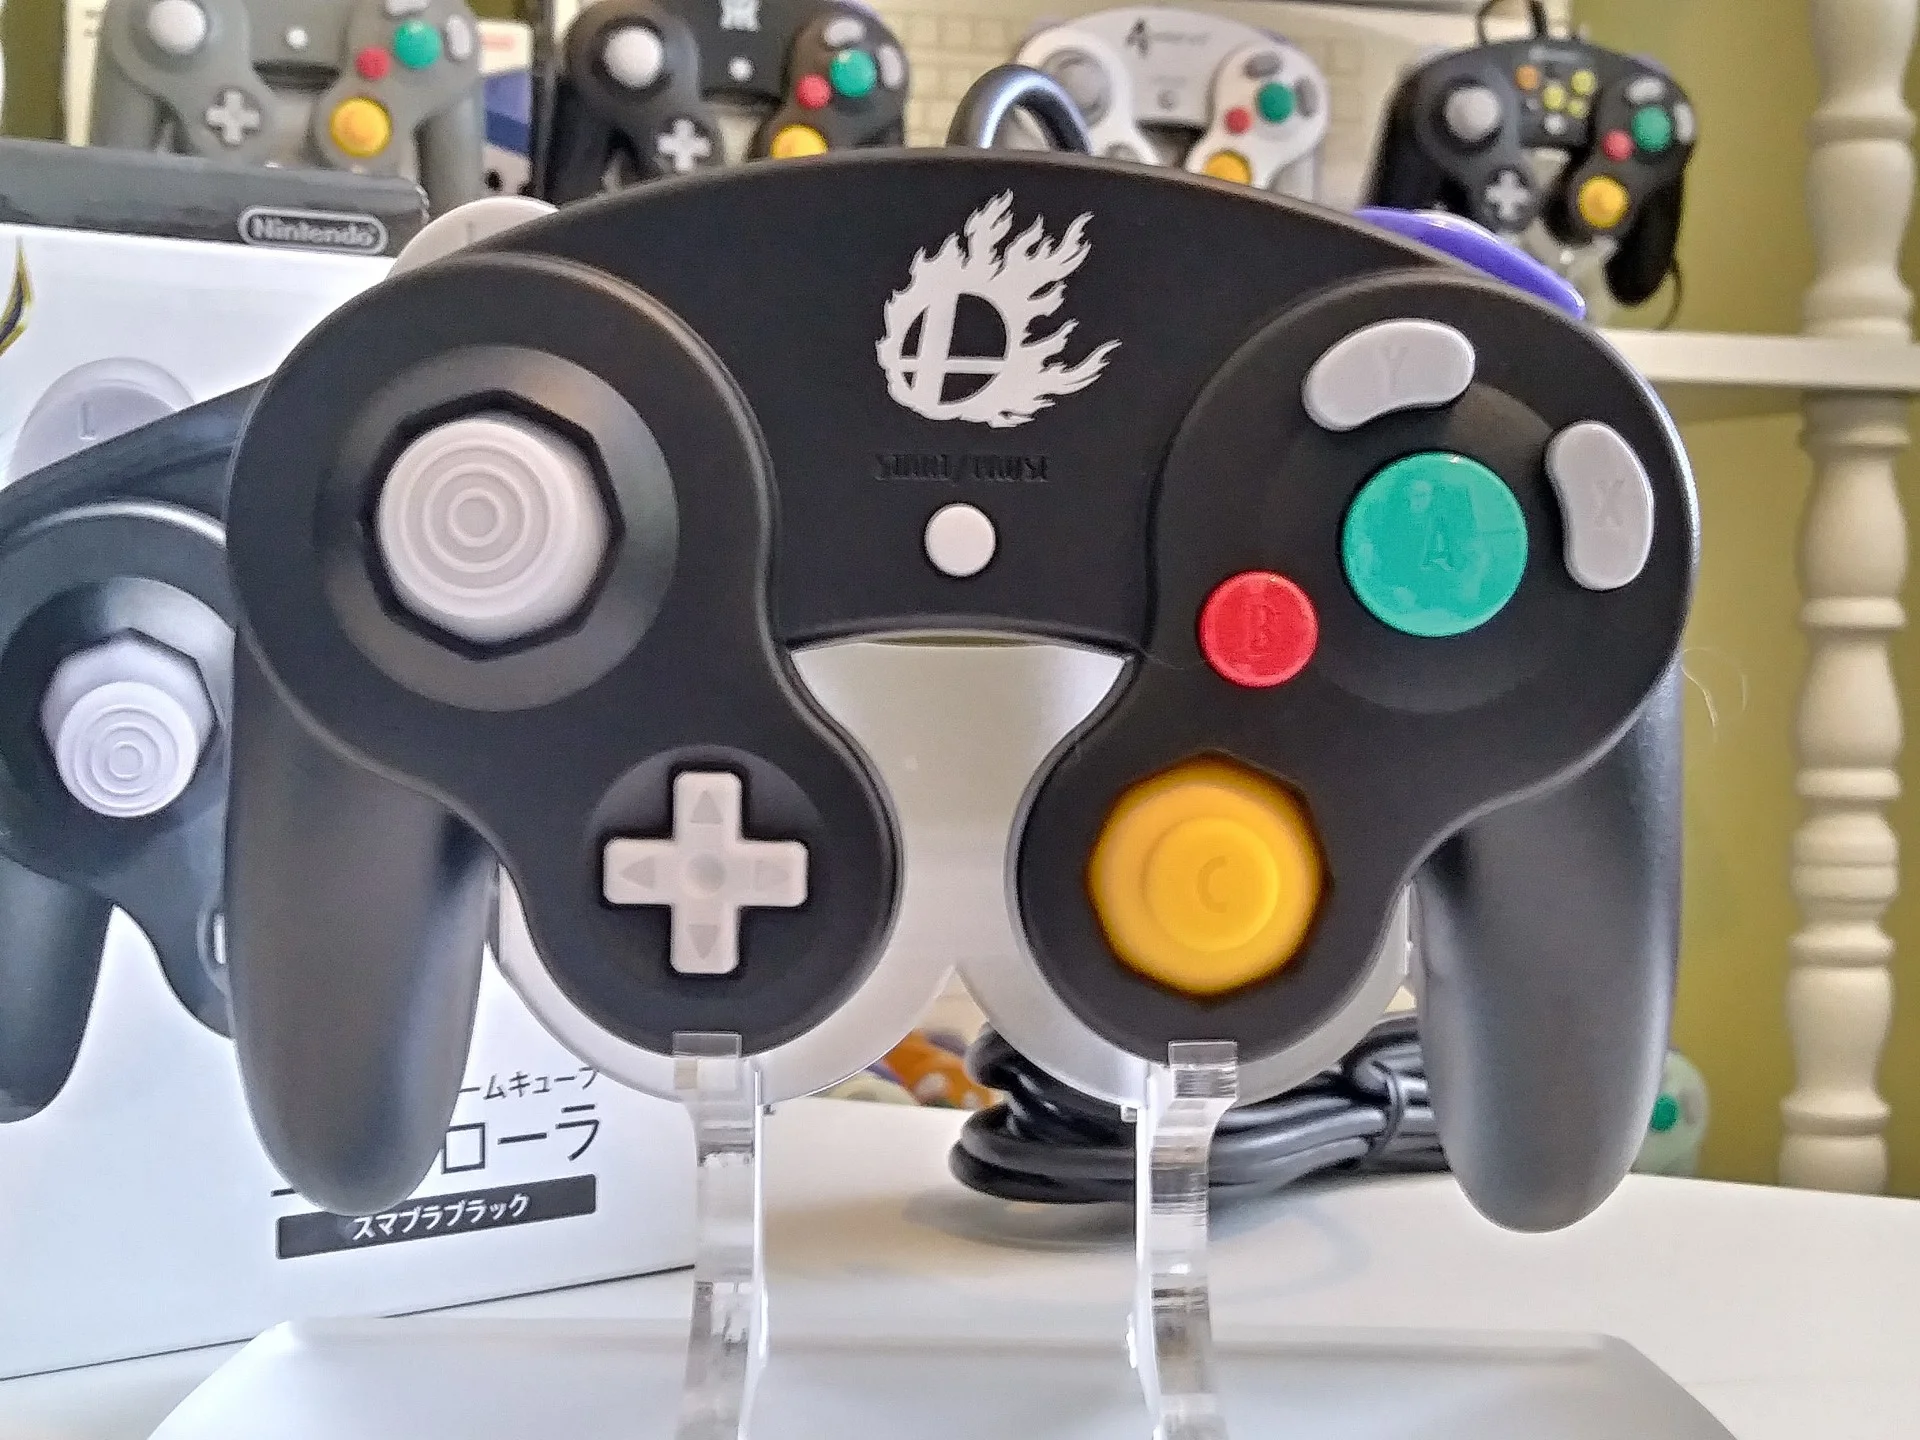  Nintendo GameCube Super Smash Bros. Black Controller [AUS]